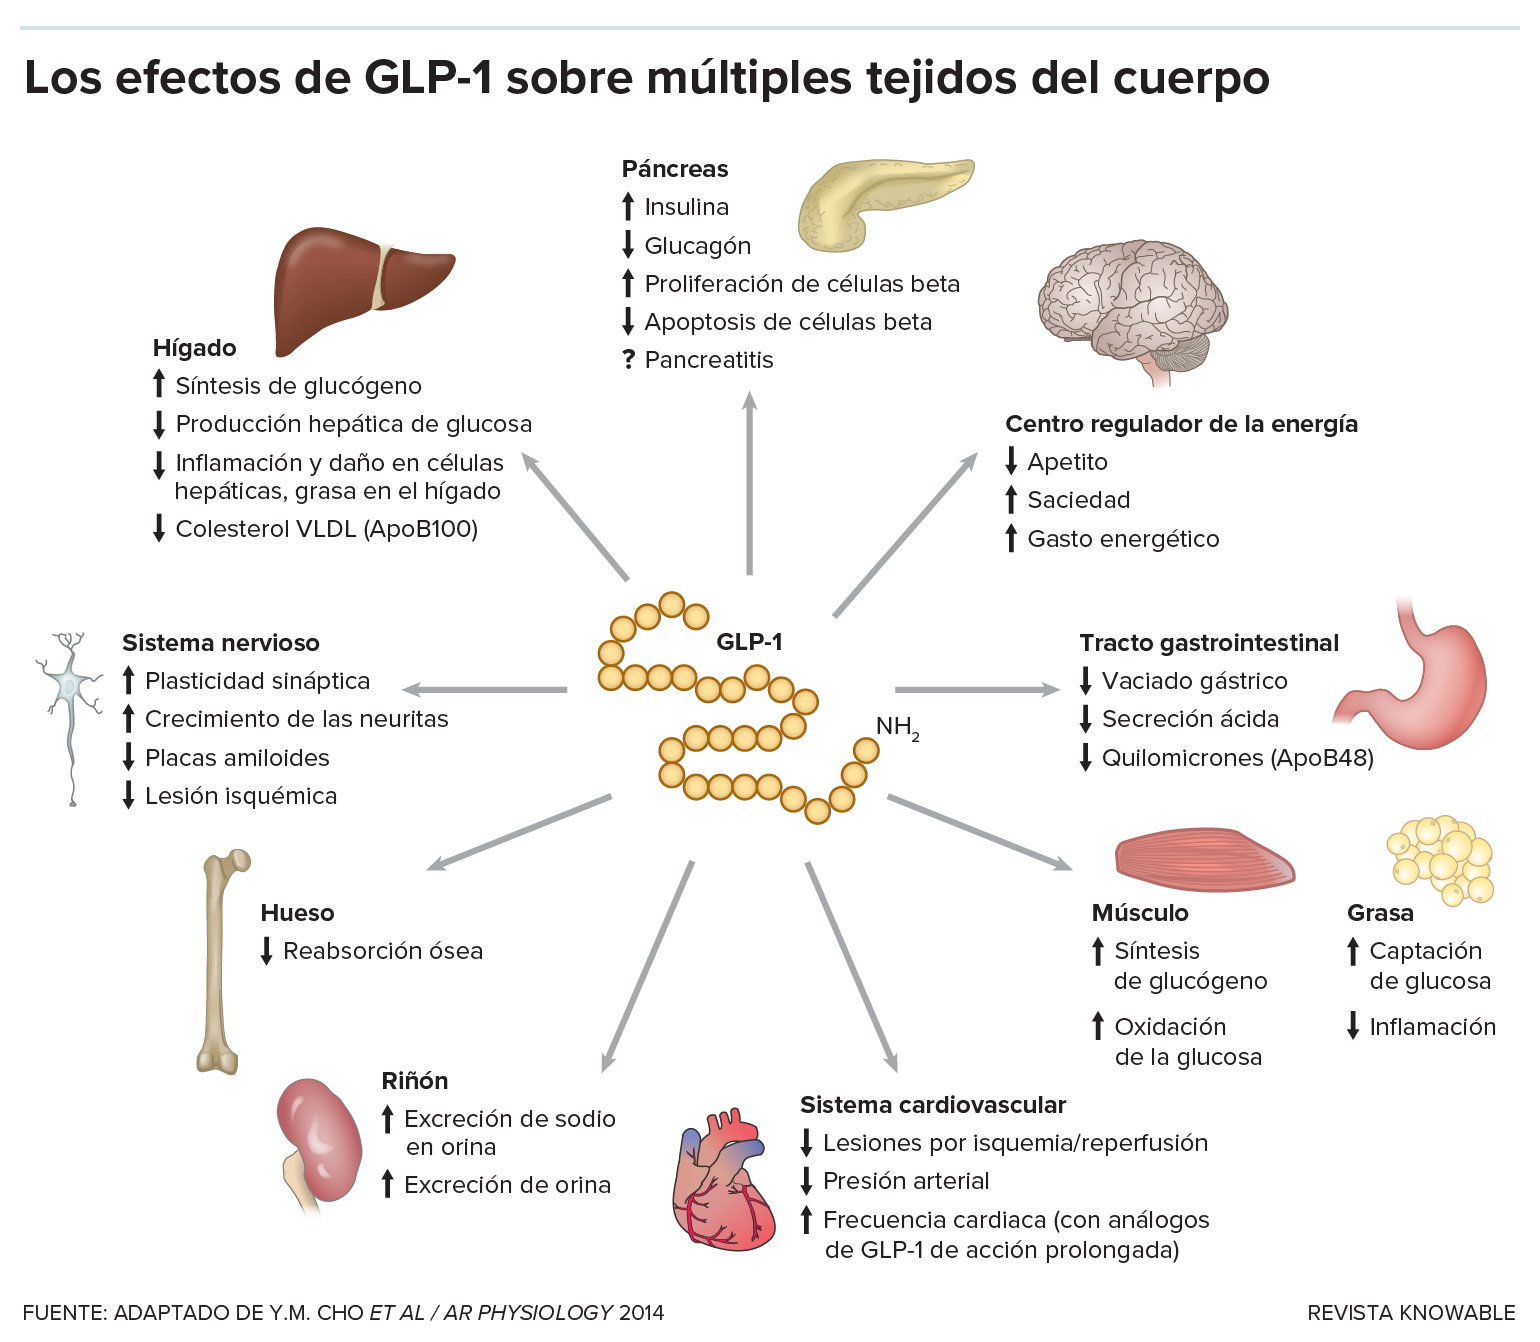 Gráfico que muestra las distintas funciones de GLP-1 en el cuerpo, actuando sobre el páncreas, el estómago, el tracto gastrointestinal, los riñones, los huesos, el corazón, el hígado, los músculos y los tejidos adiposos, el centro regulador de energía del cerebro y el sistema neural.